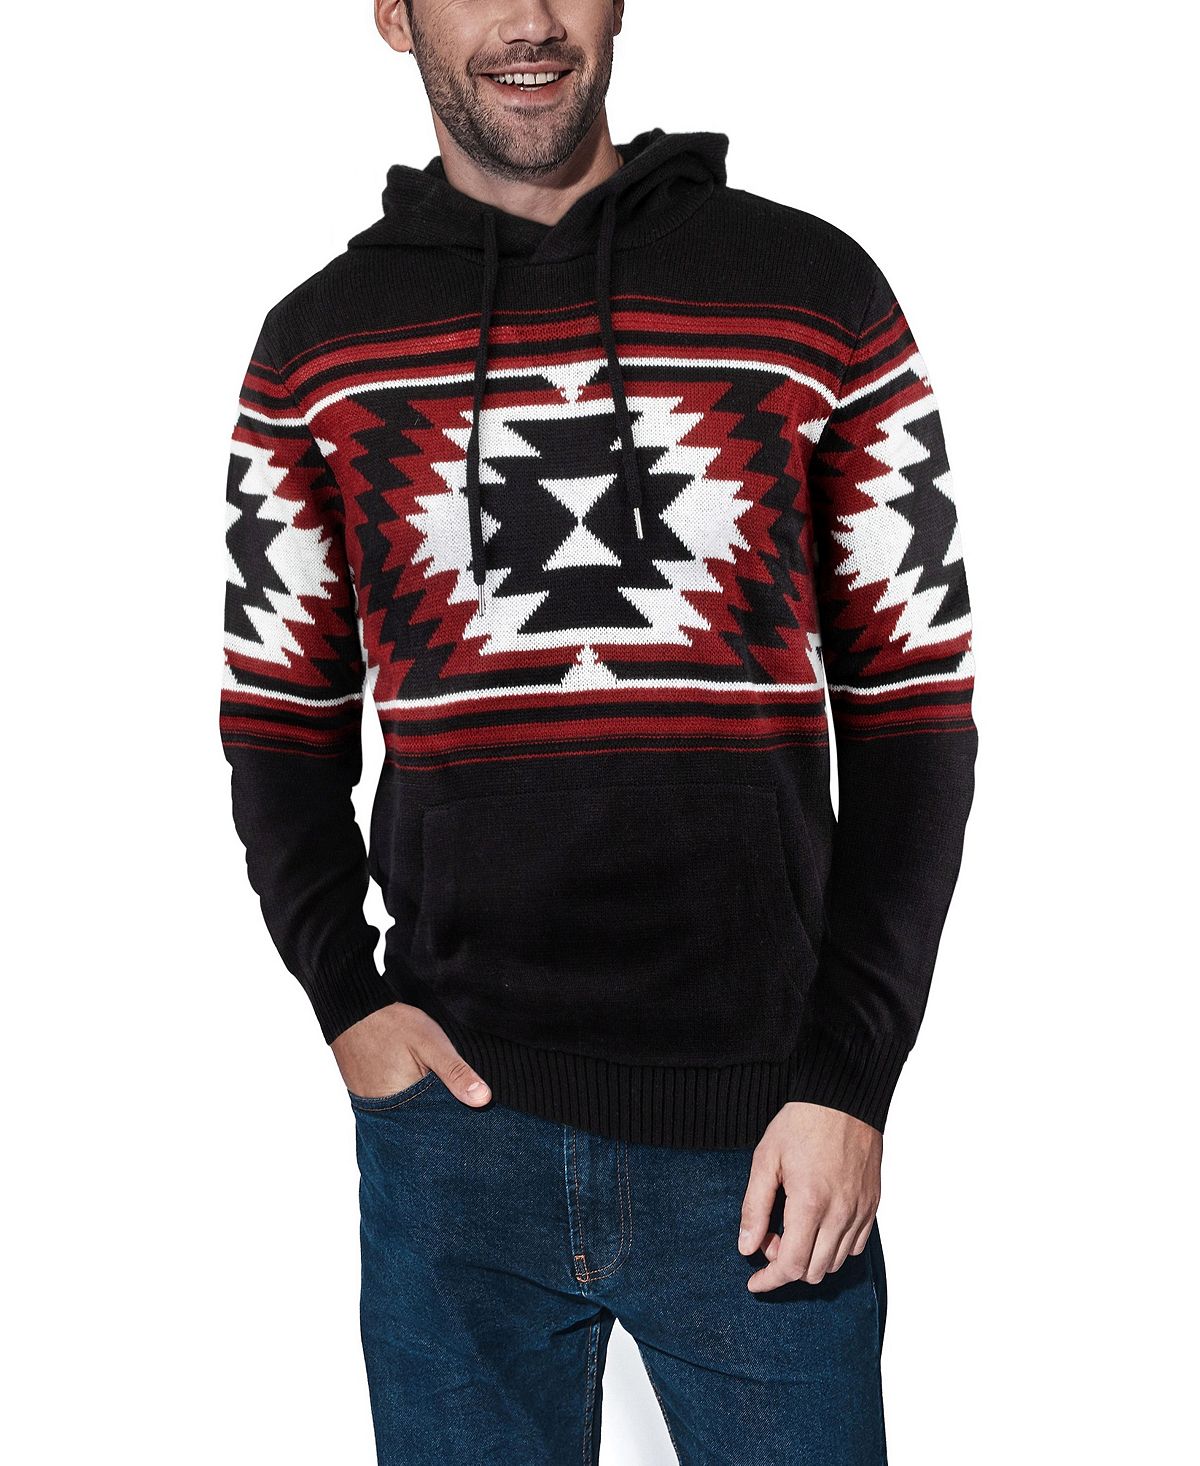 Мужской свитер с капюшоном aztec X-Ray, черный